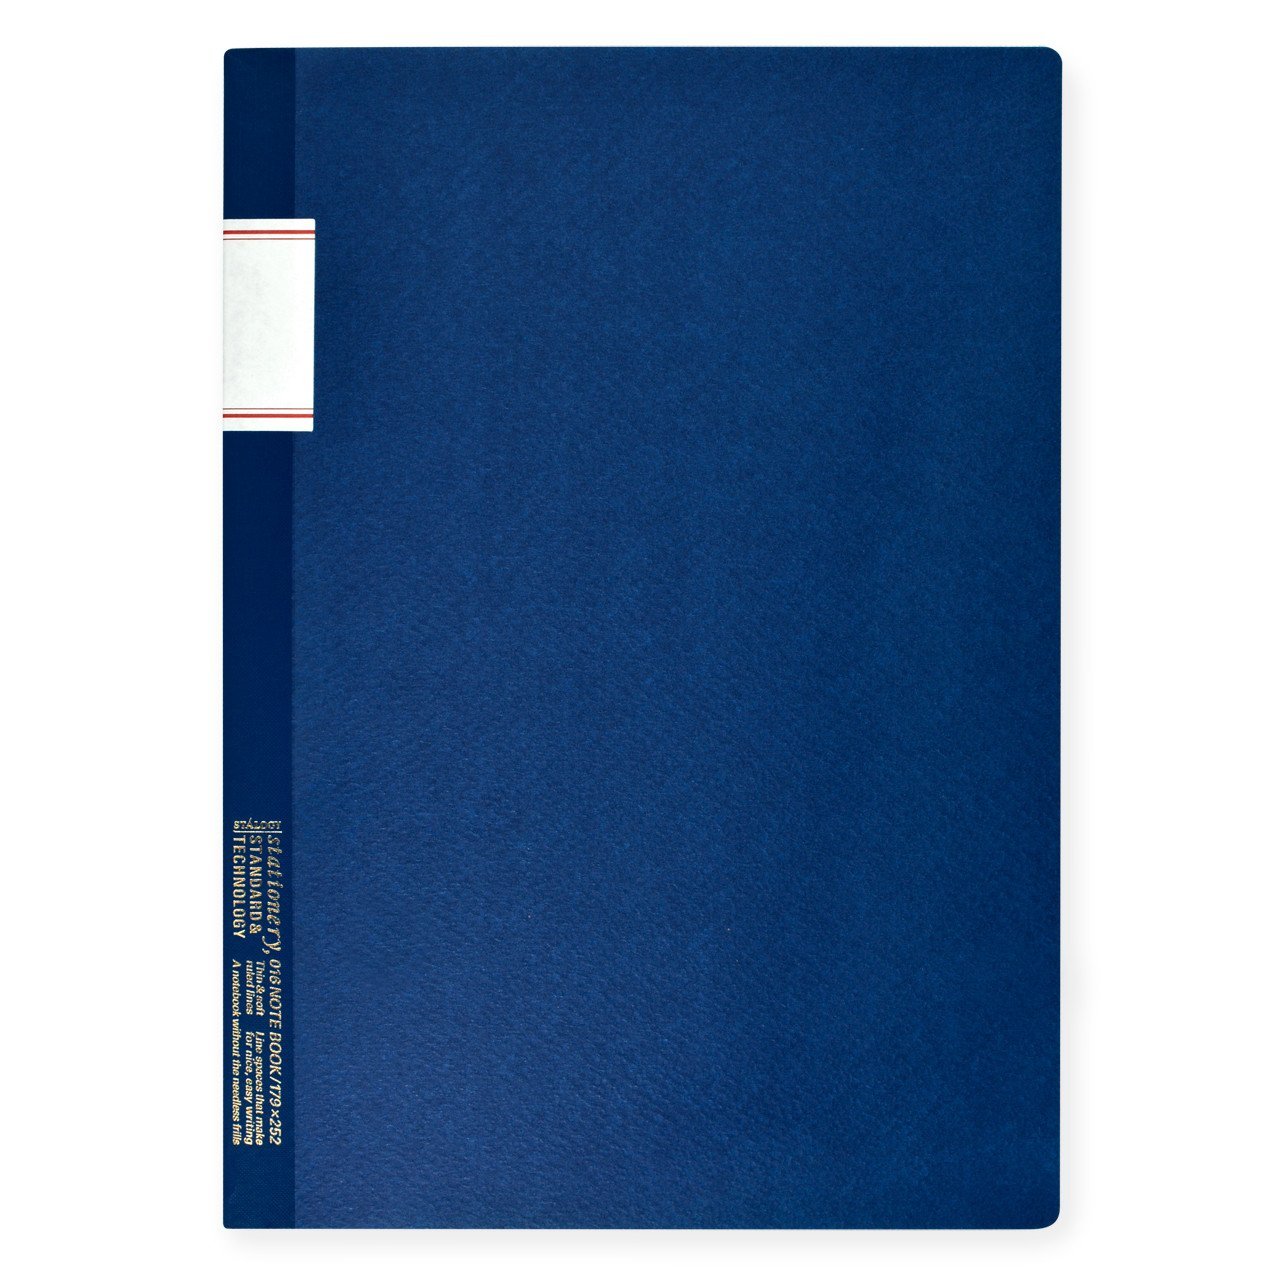 Stalogy Stalogy 7 x 10" Lined Notebook Blue 